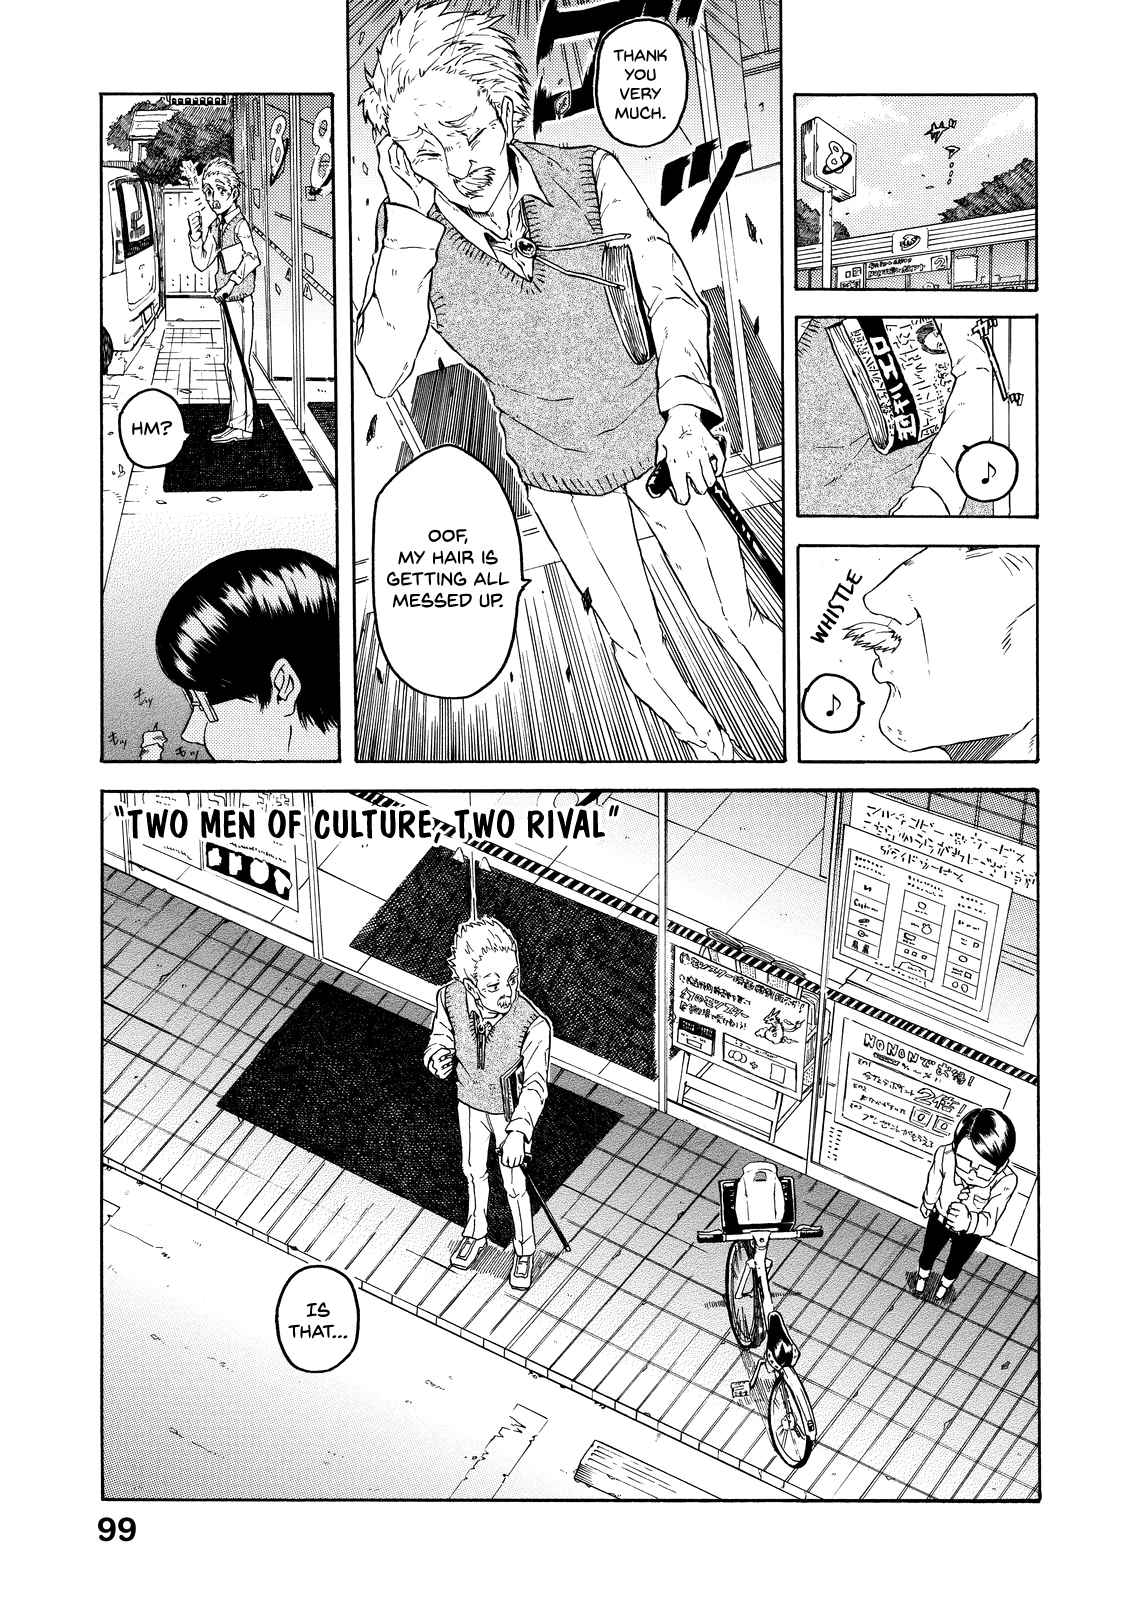 Eguchi kun Doesn't Miss a Thing Vol. 1 Ch. 5 Eguchi kun and Rival.